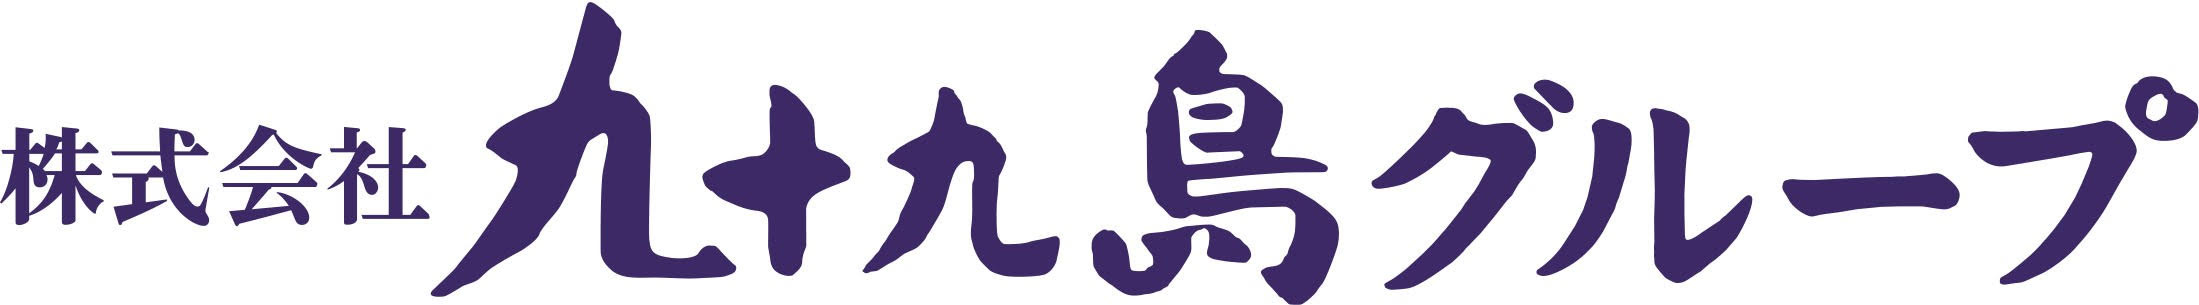 九十九島グループロゴ